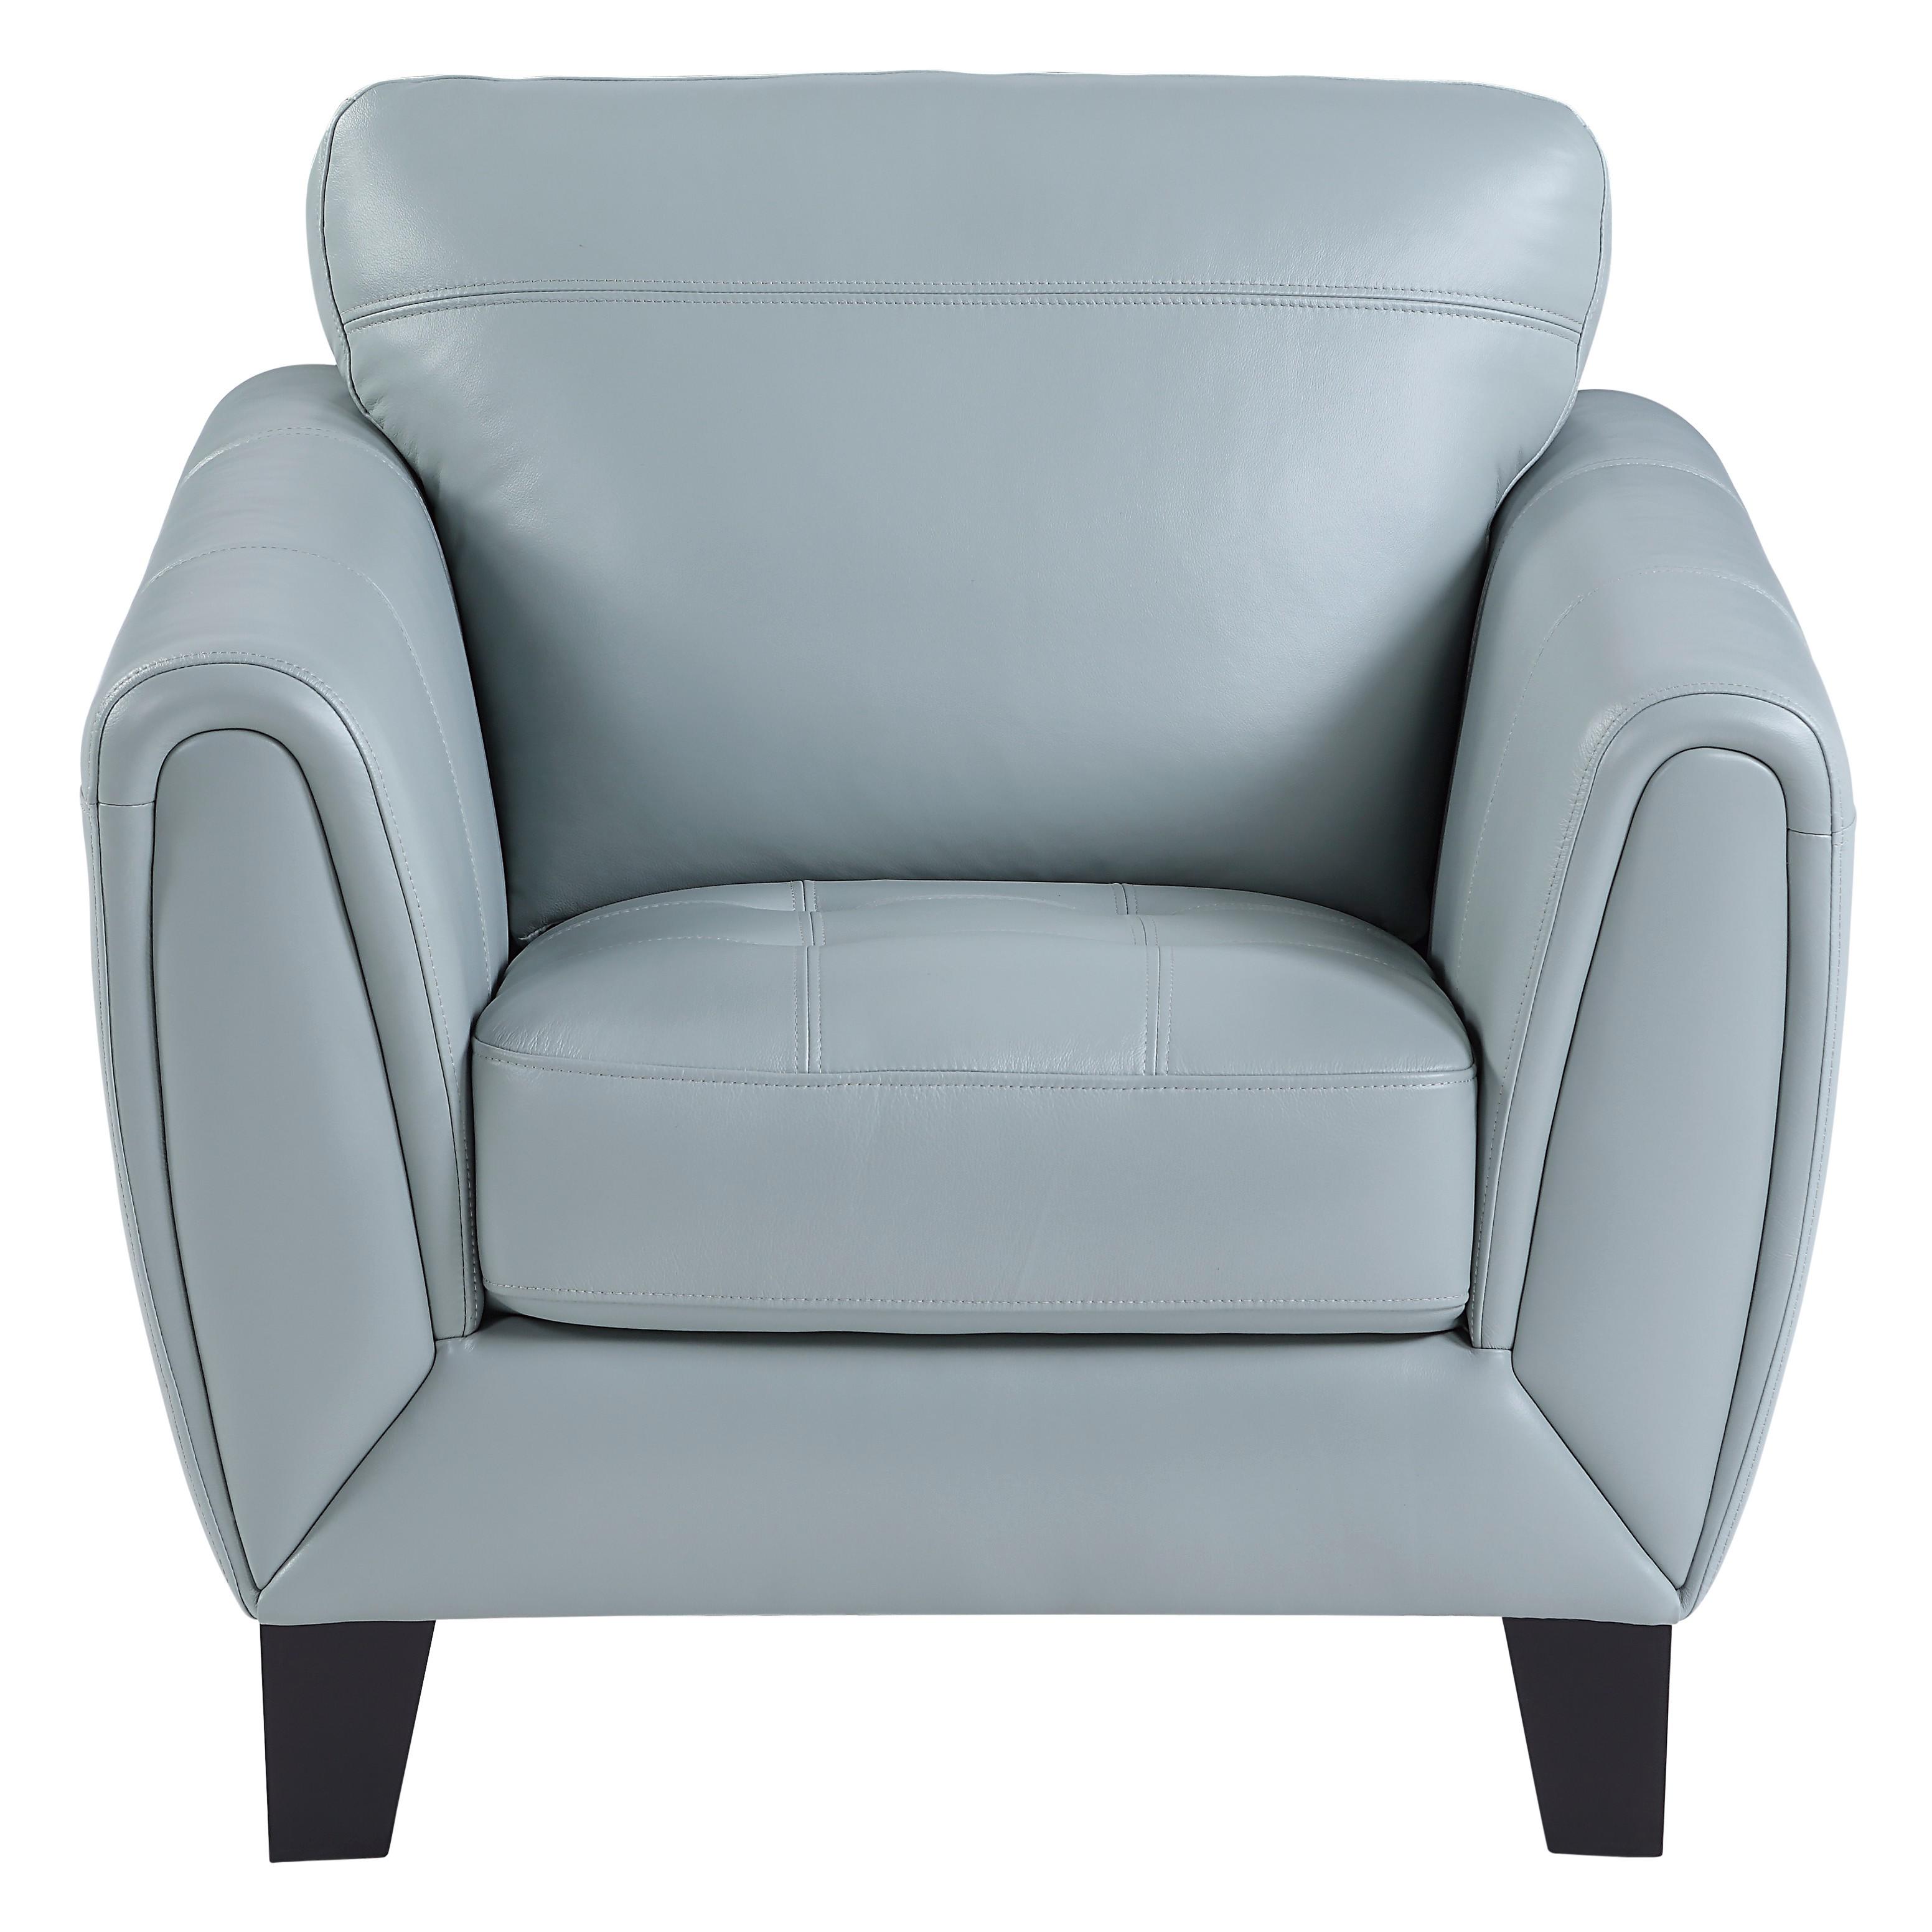 Modern Arm Chair 9460AQ-1 Spivey 9460AQ-1 in Aqua Leather